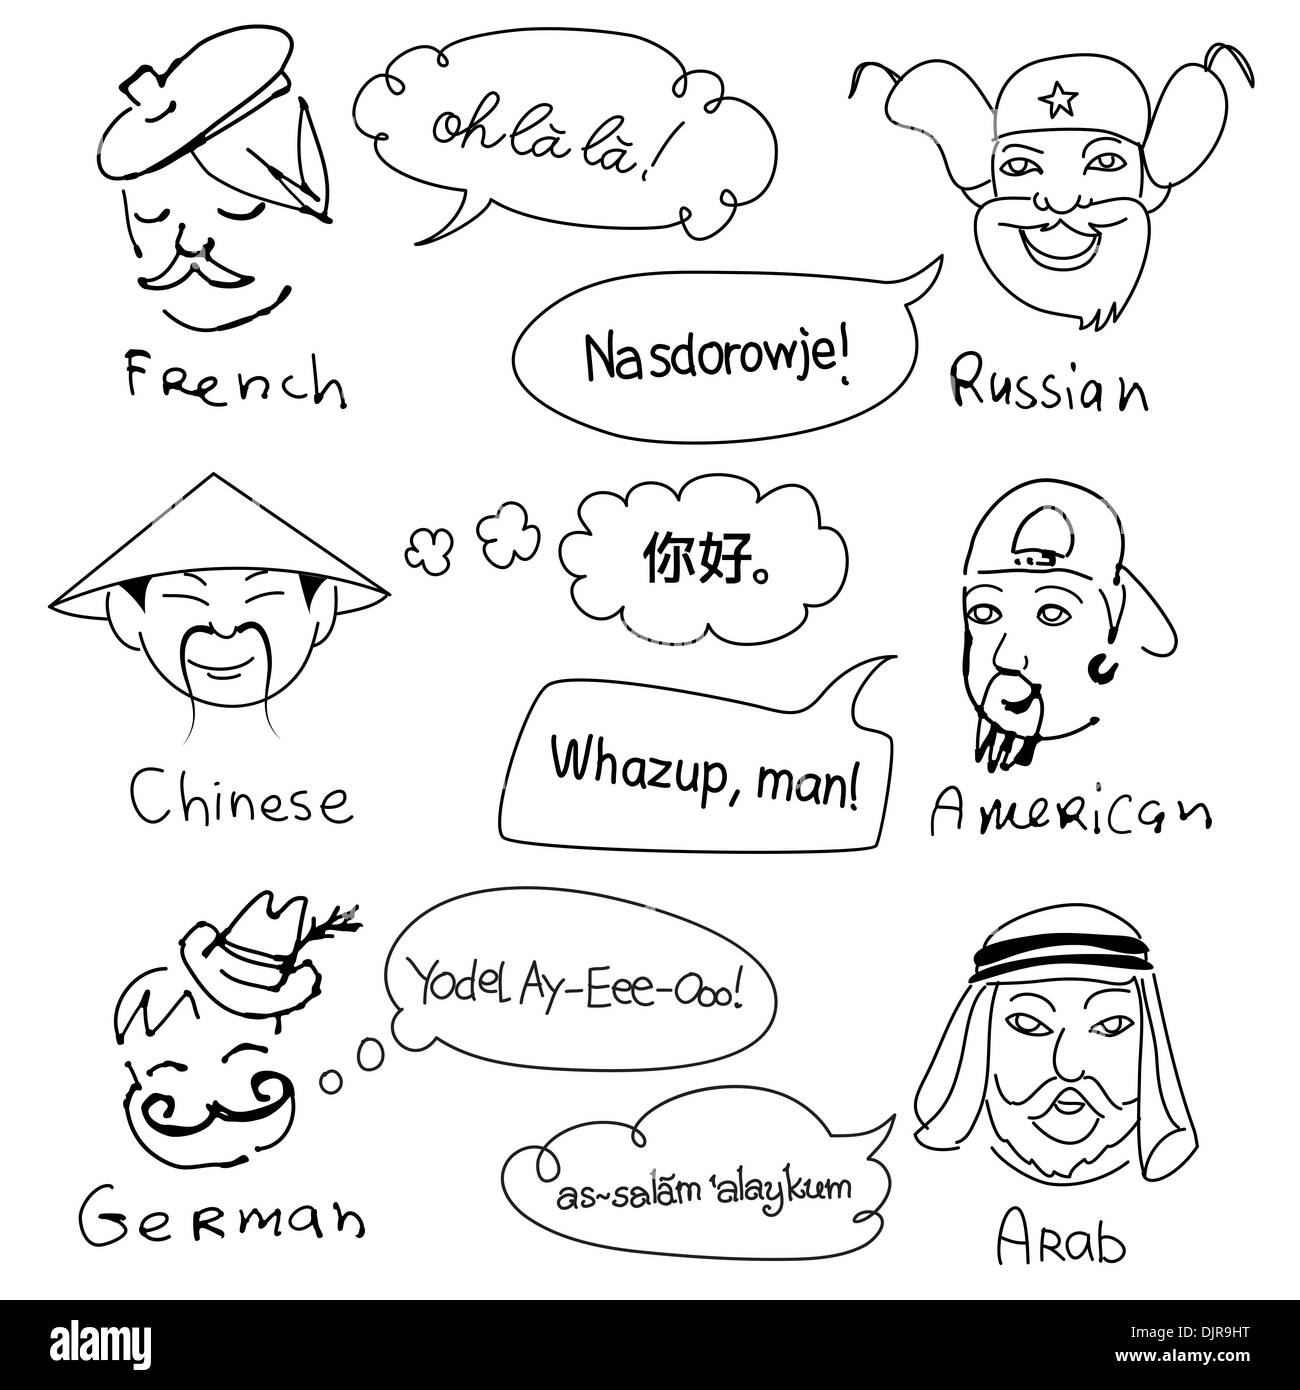 Diversi gli stereotipi di nazionalità provenienti da tutto il mondo. Disegnata a mano scarabocchi. Illustrazione Vettoriale